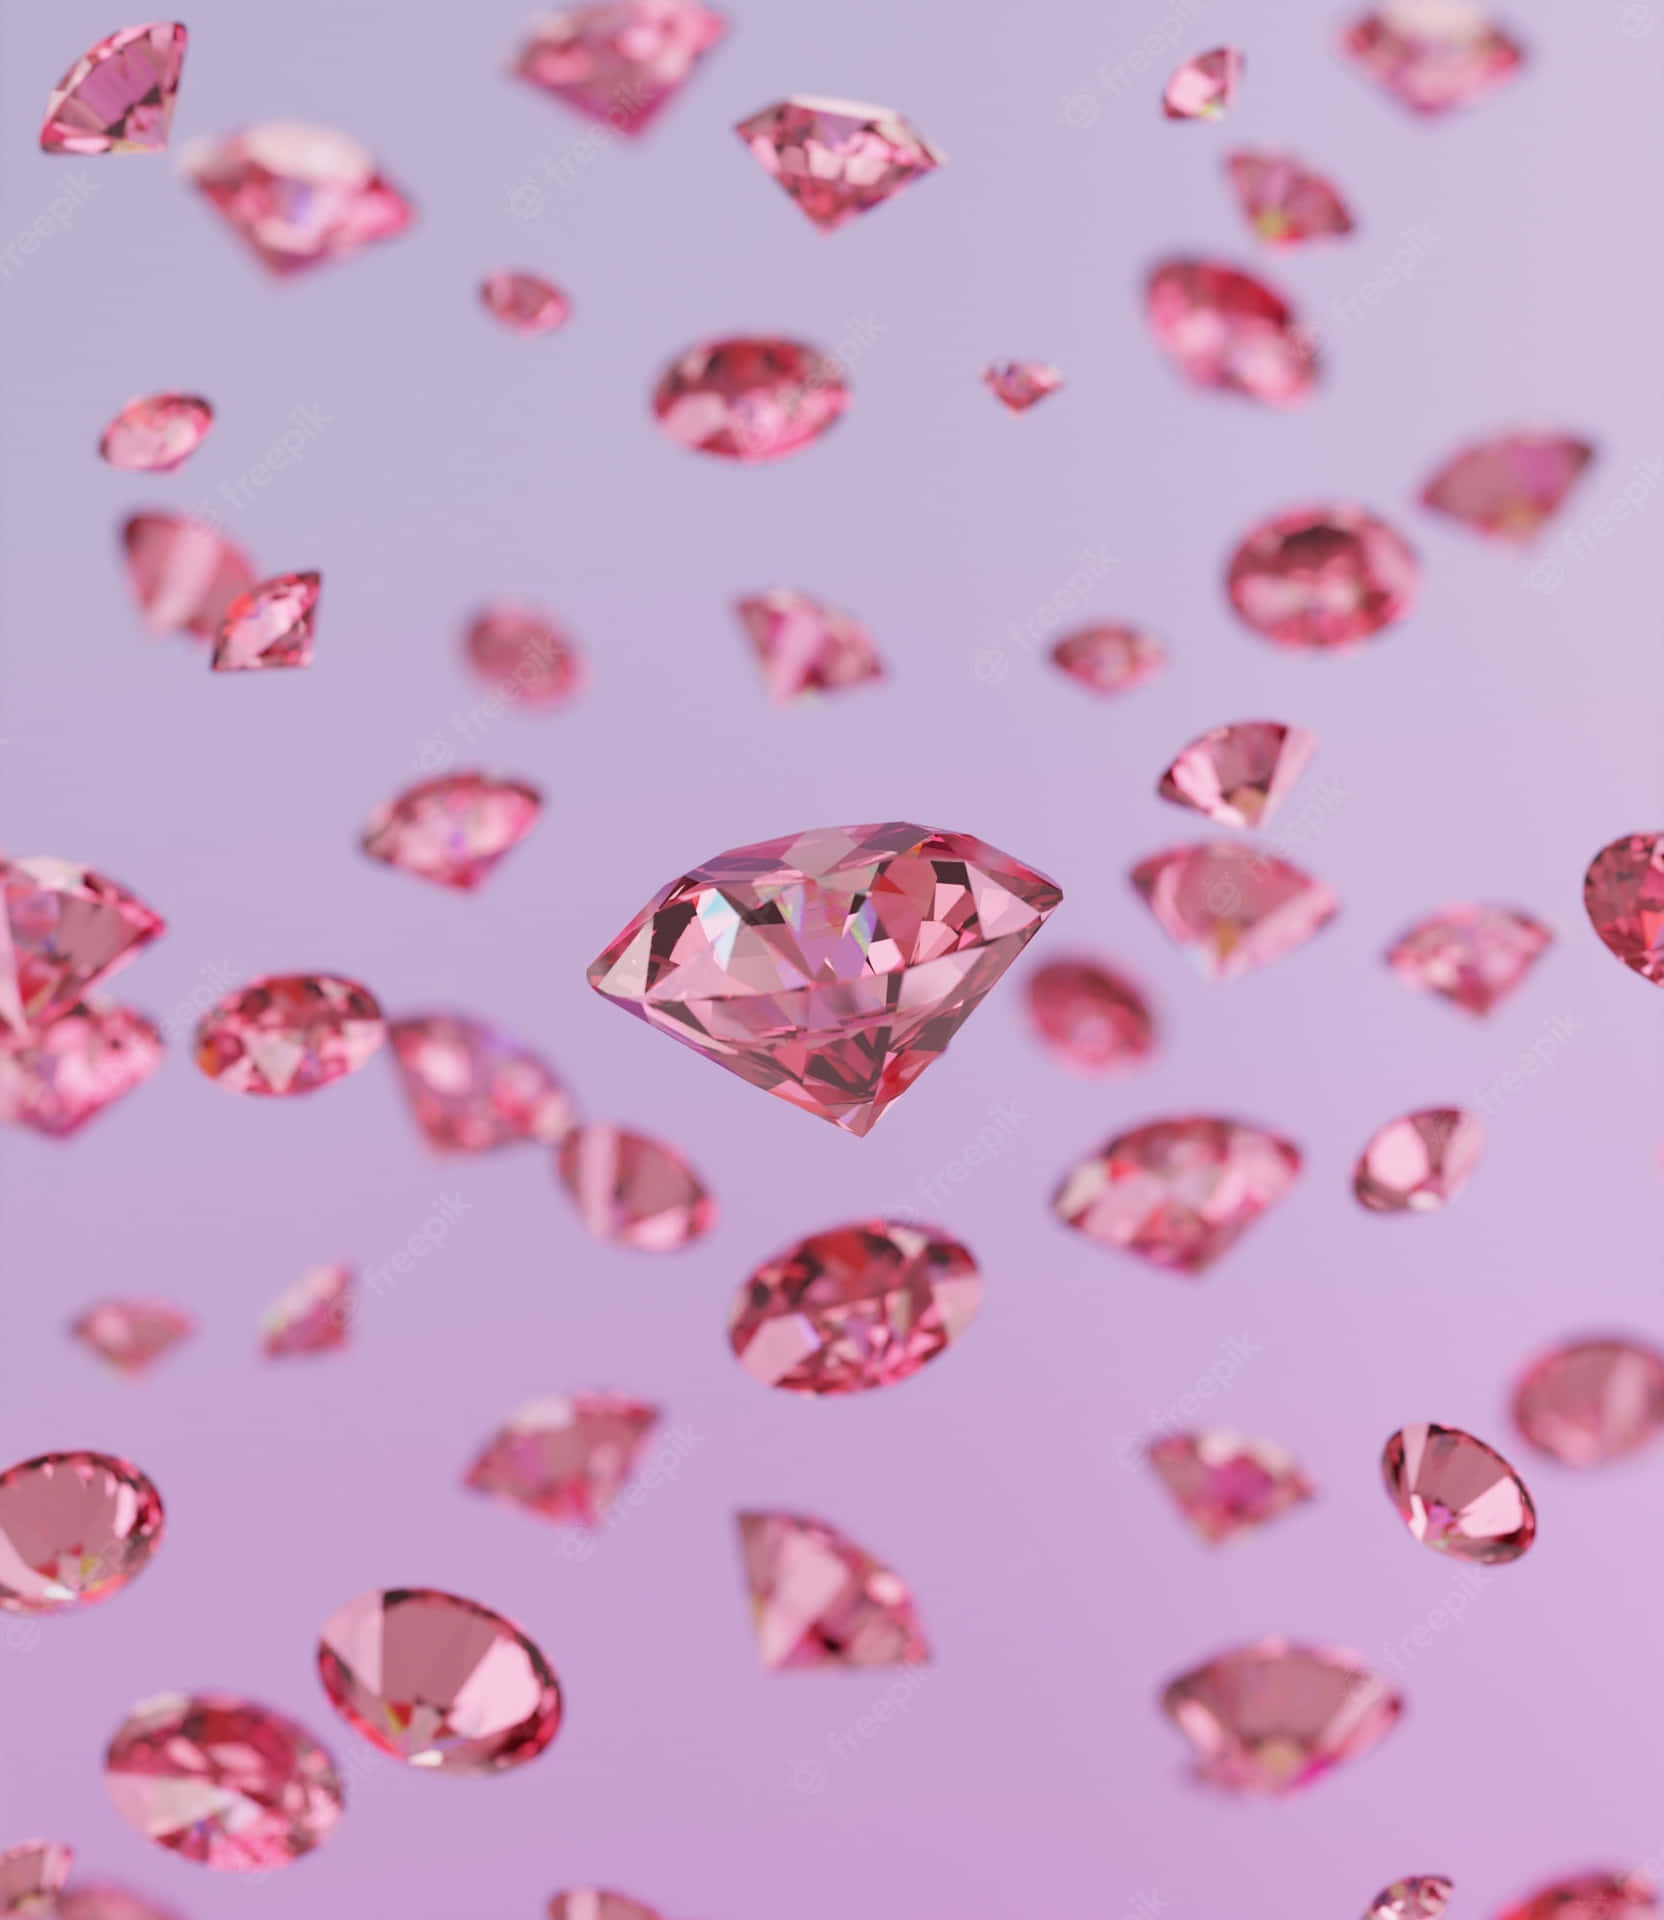 A brilliant pink diamond glistening in light